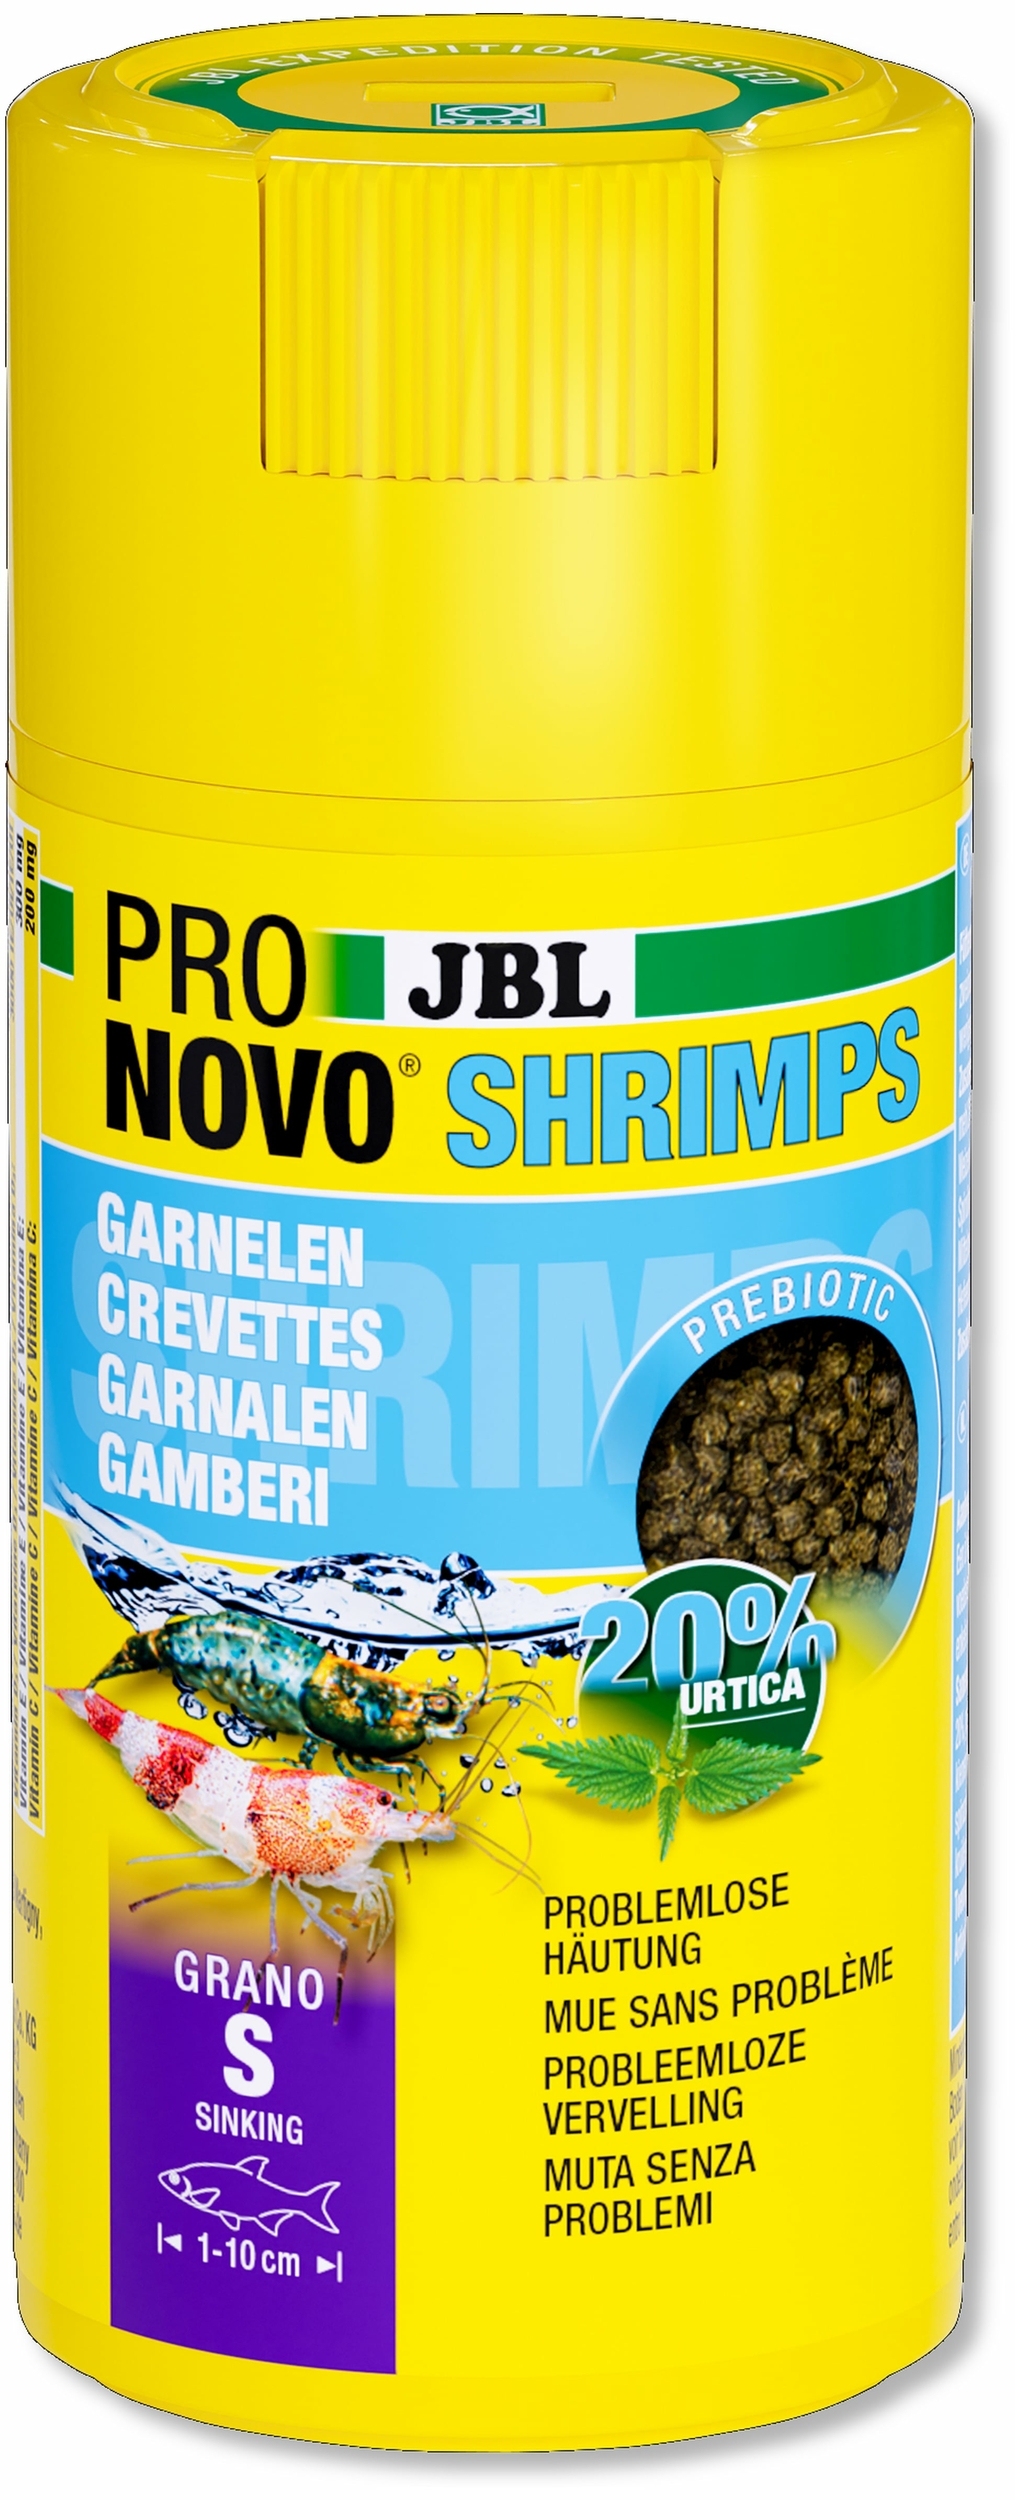 jbl-pronovo-shrimps-grano-s-100-ml-nourriture-en-granules-pour-crevettes-d-eau-douce-de-1-a-10-cm-min